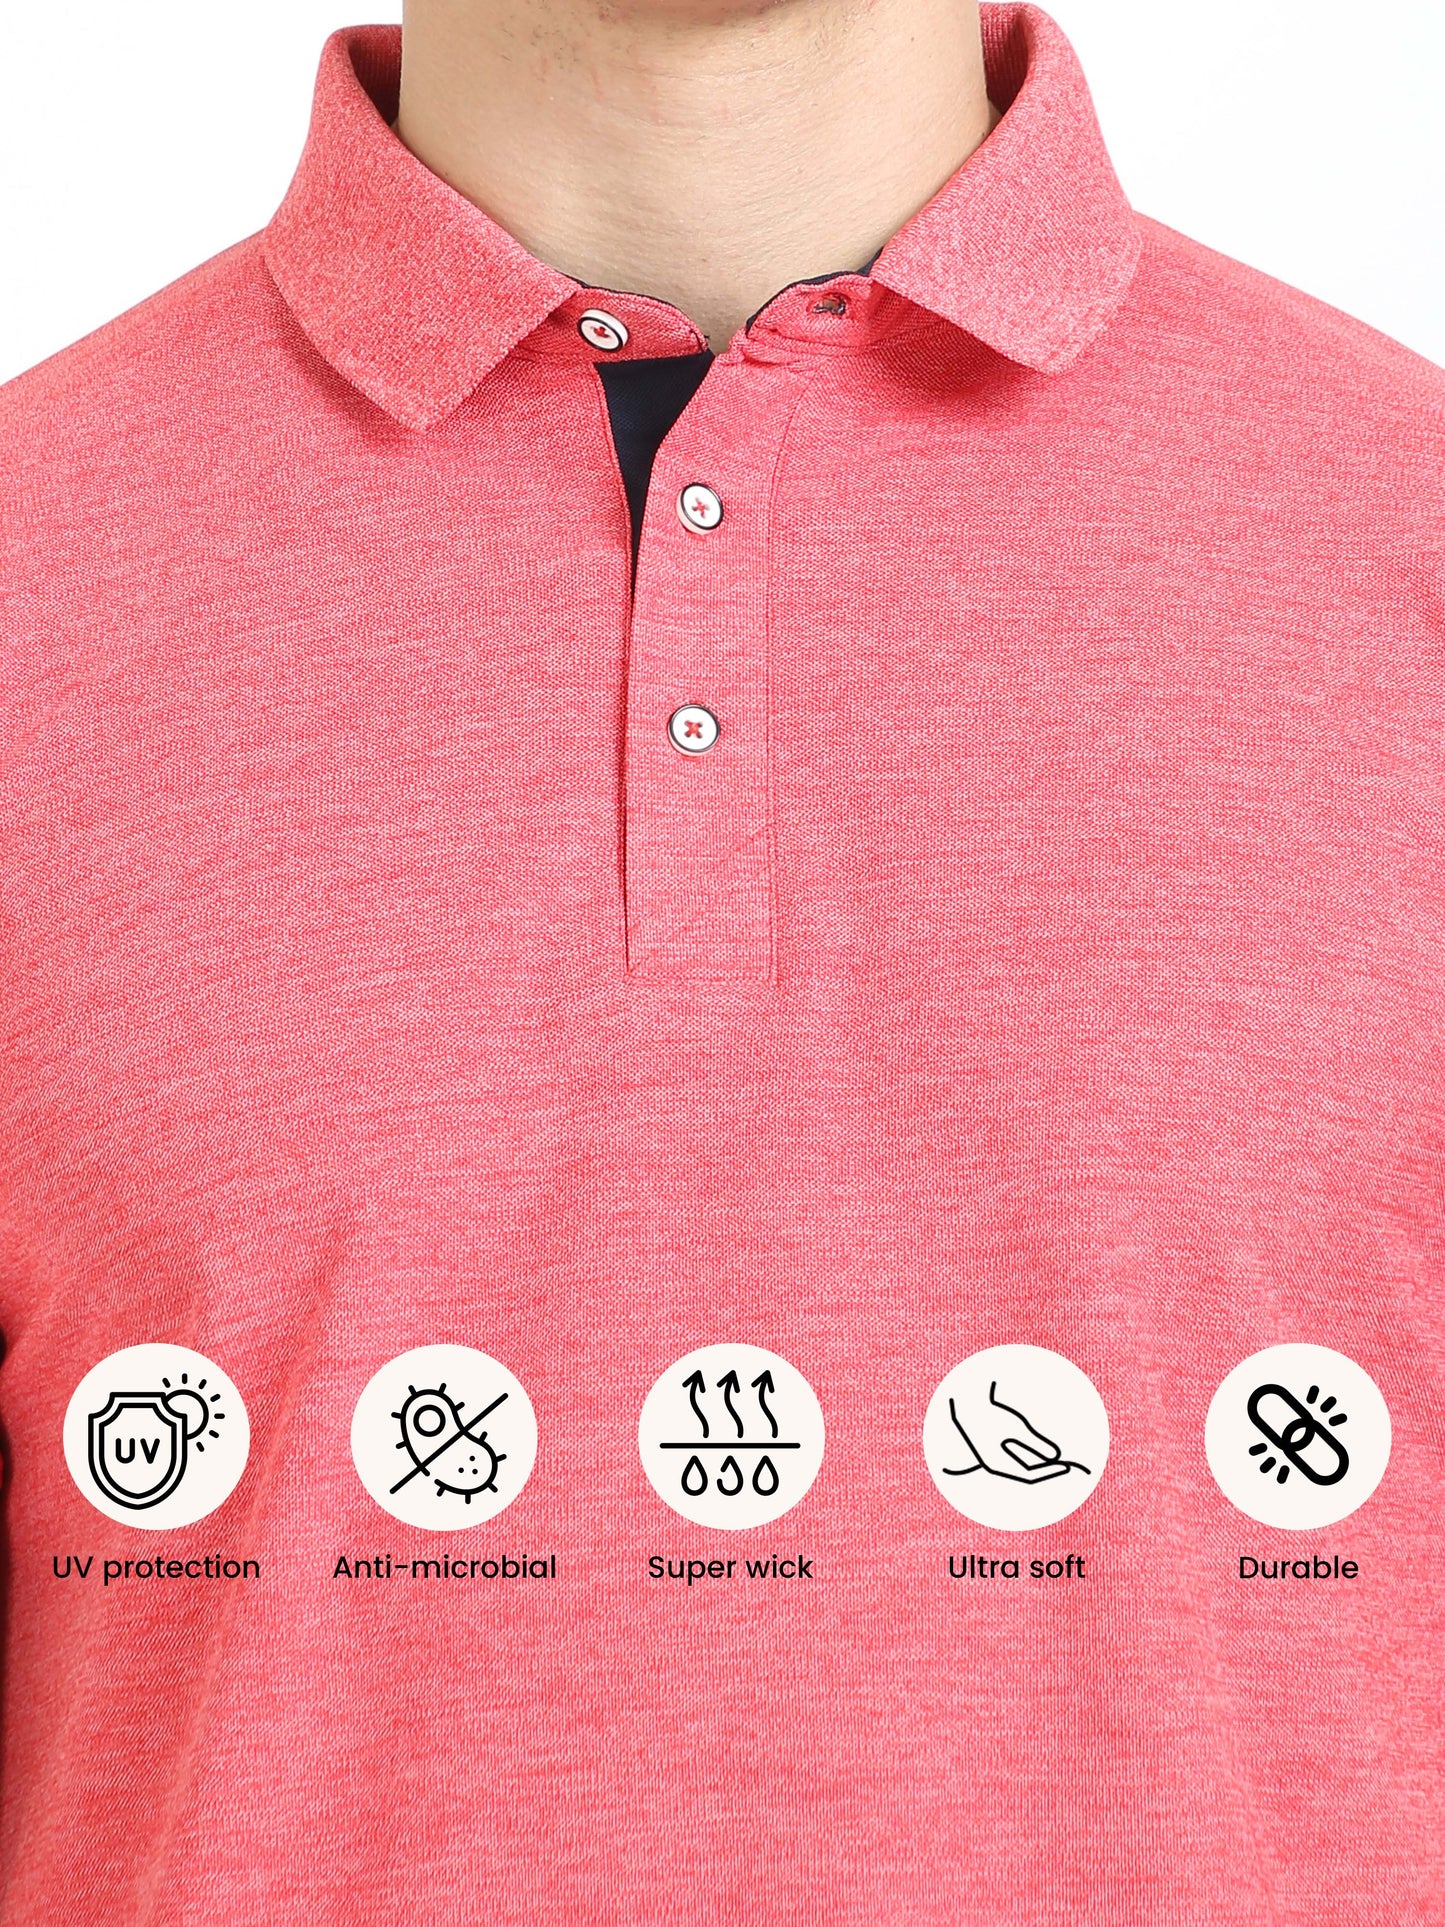 Red Melange Men's Polo T-shirt